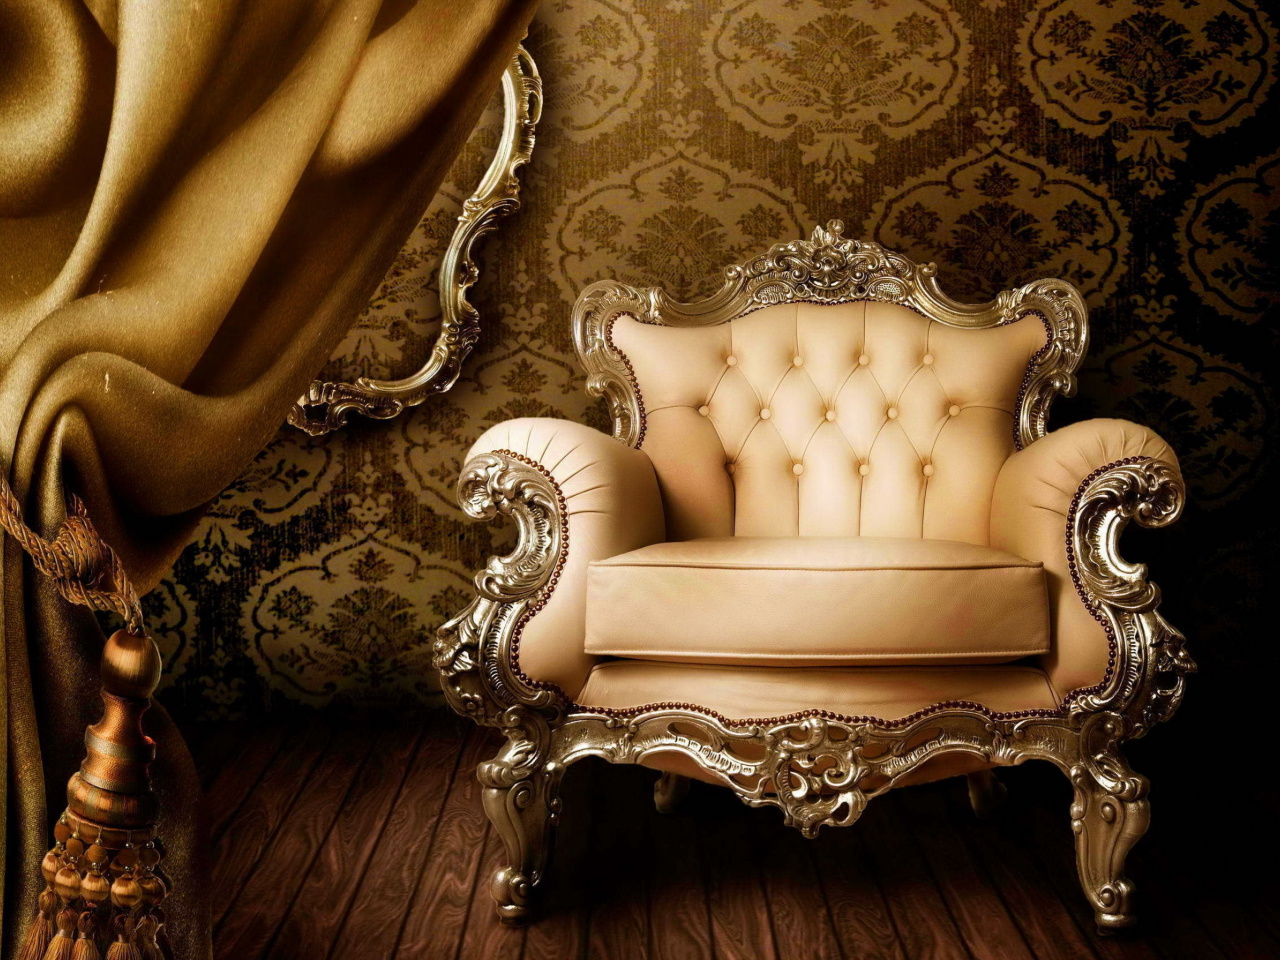 Das Luxury Furniture Wallpaper 1280x960